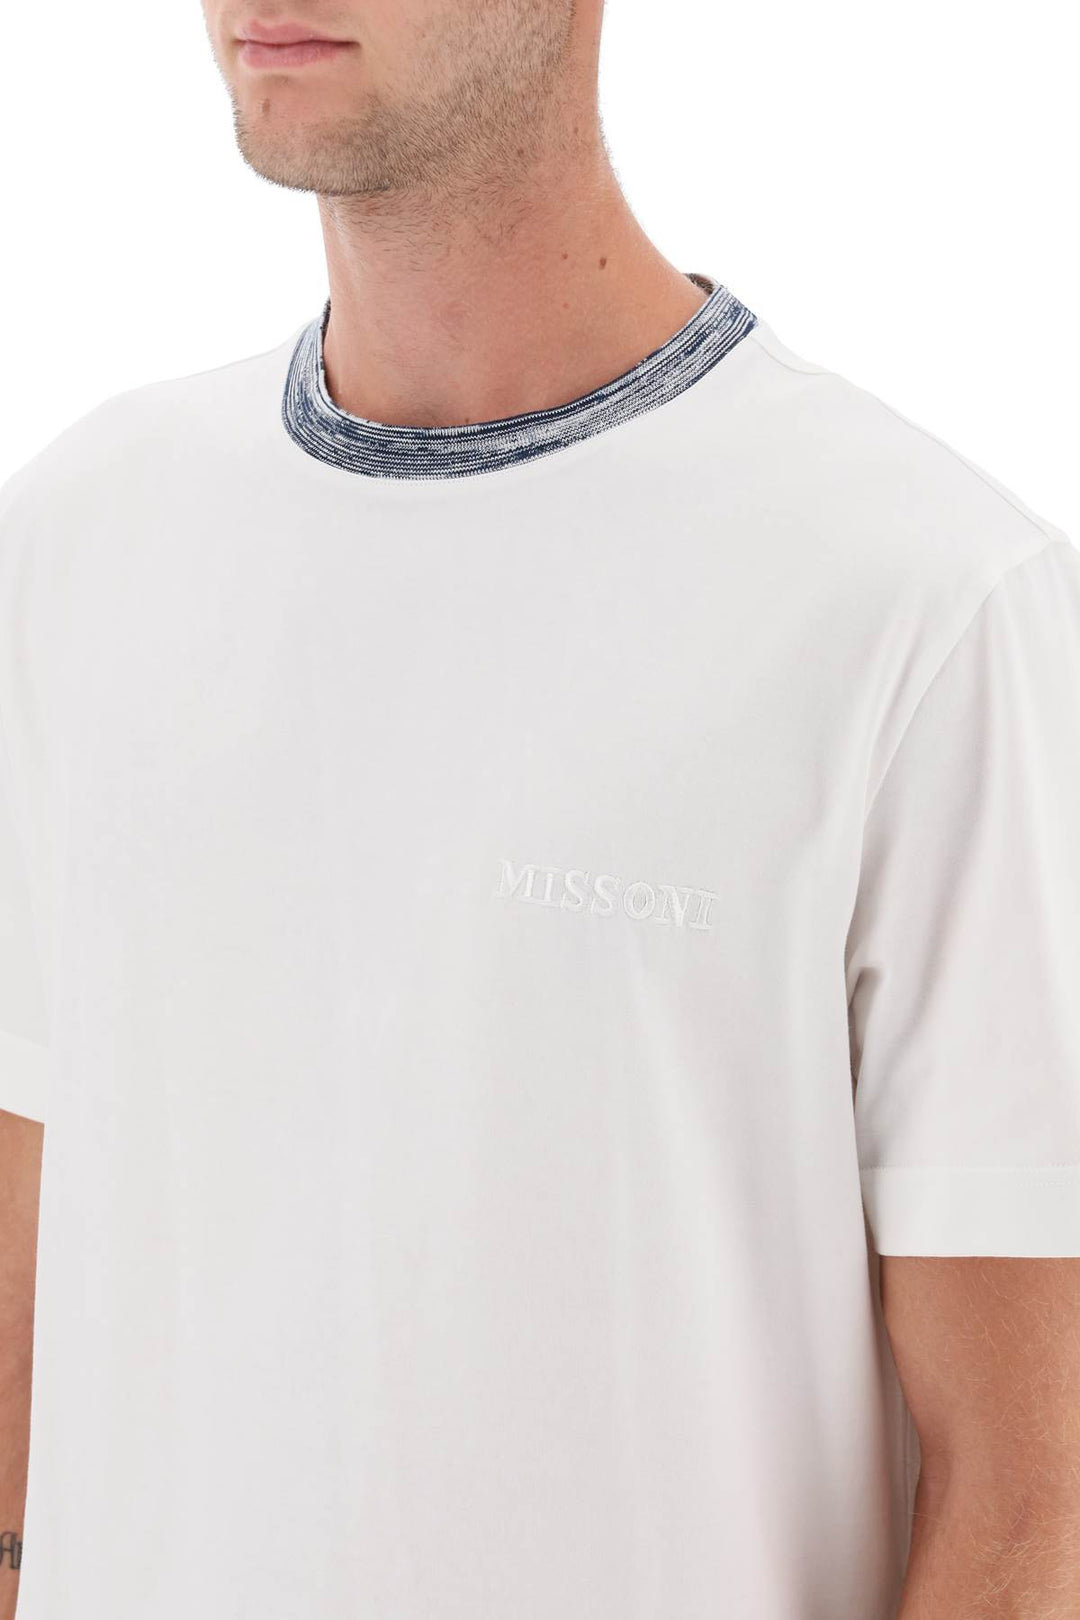 T Shirt Con Collo A Contrasto - Missoni - Uomo